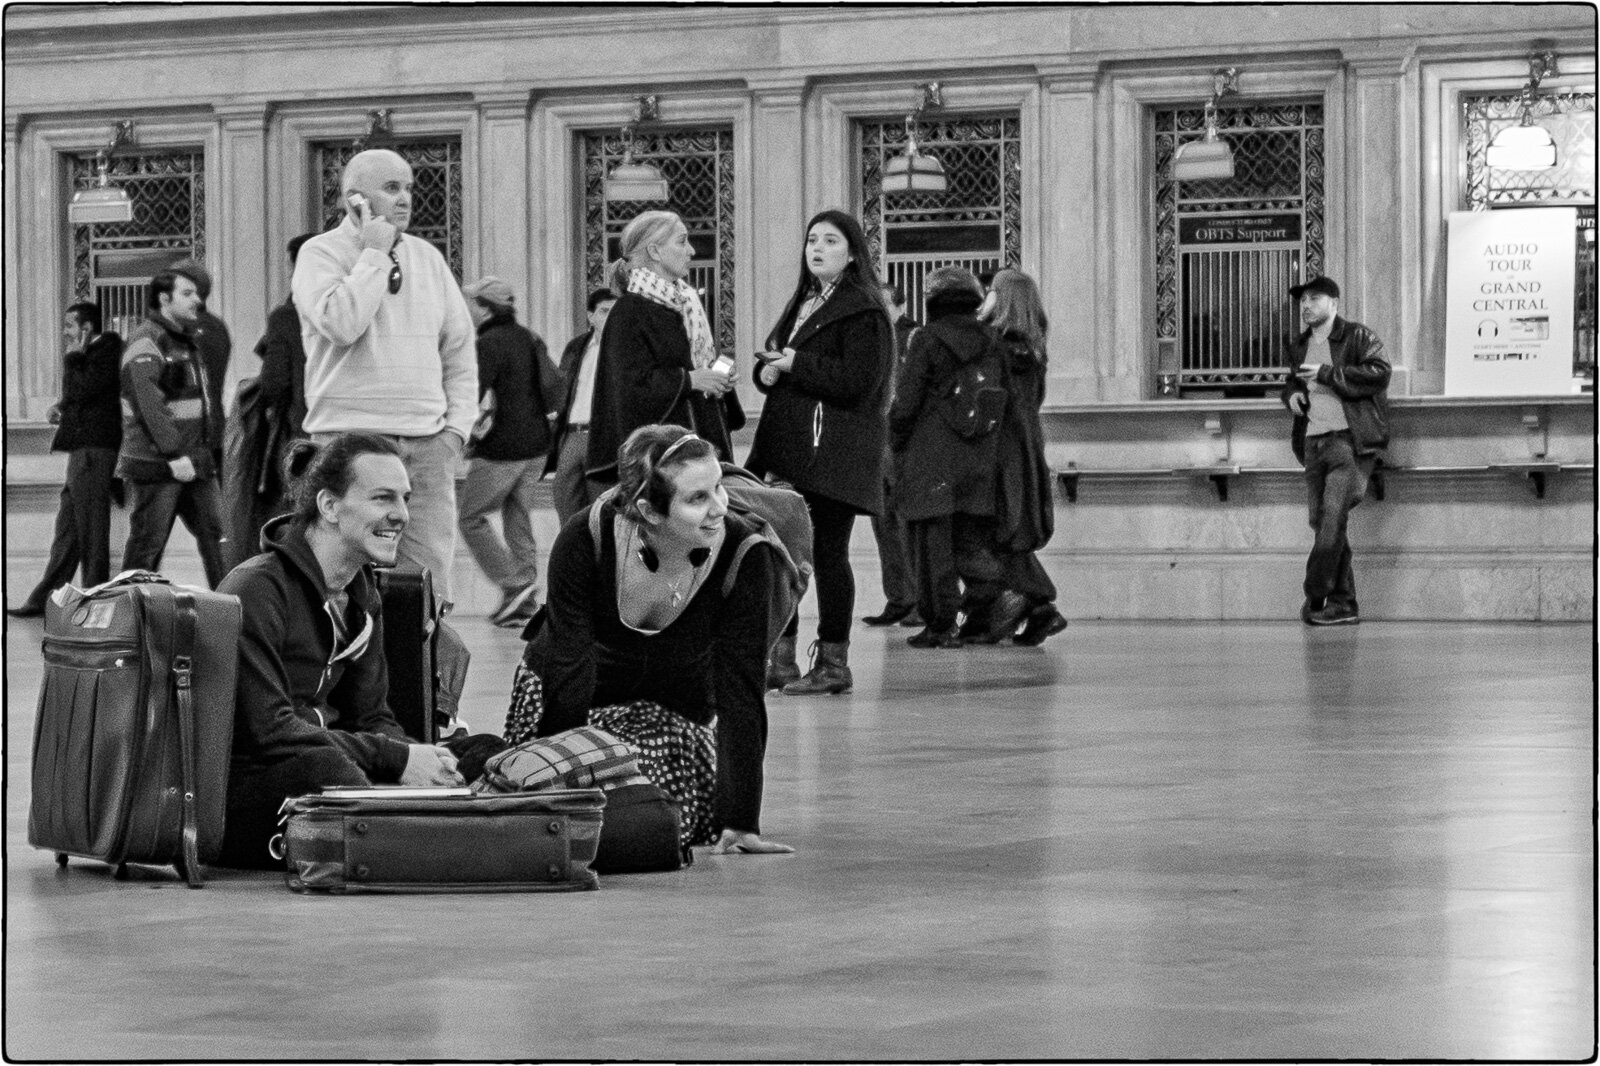 Waiting at Grand Central